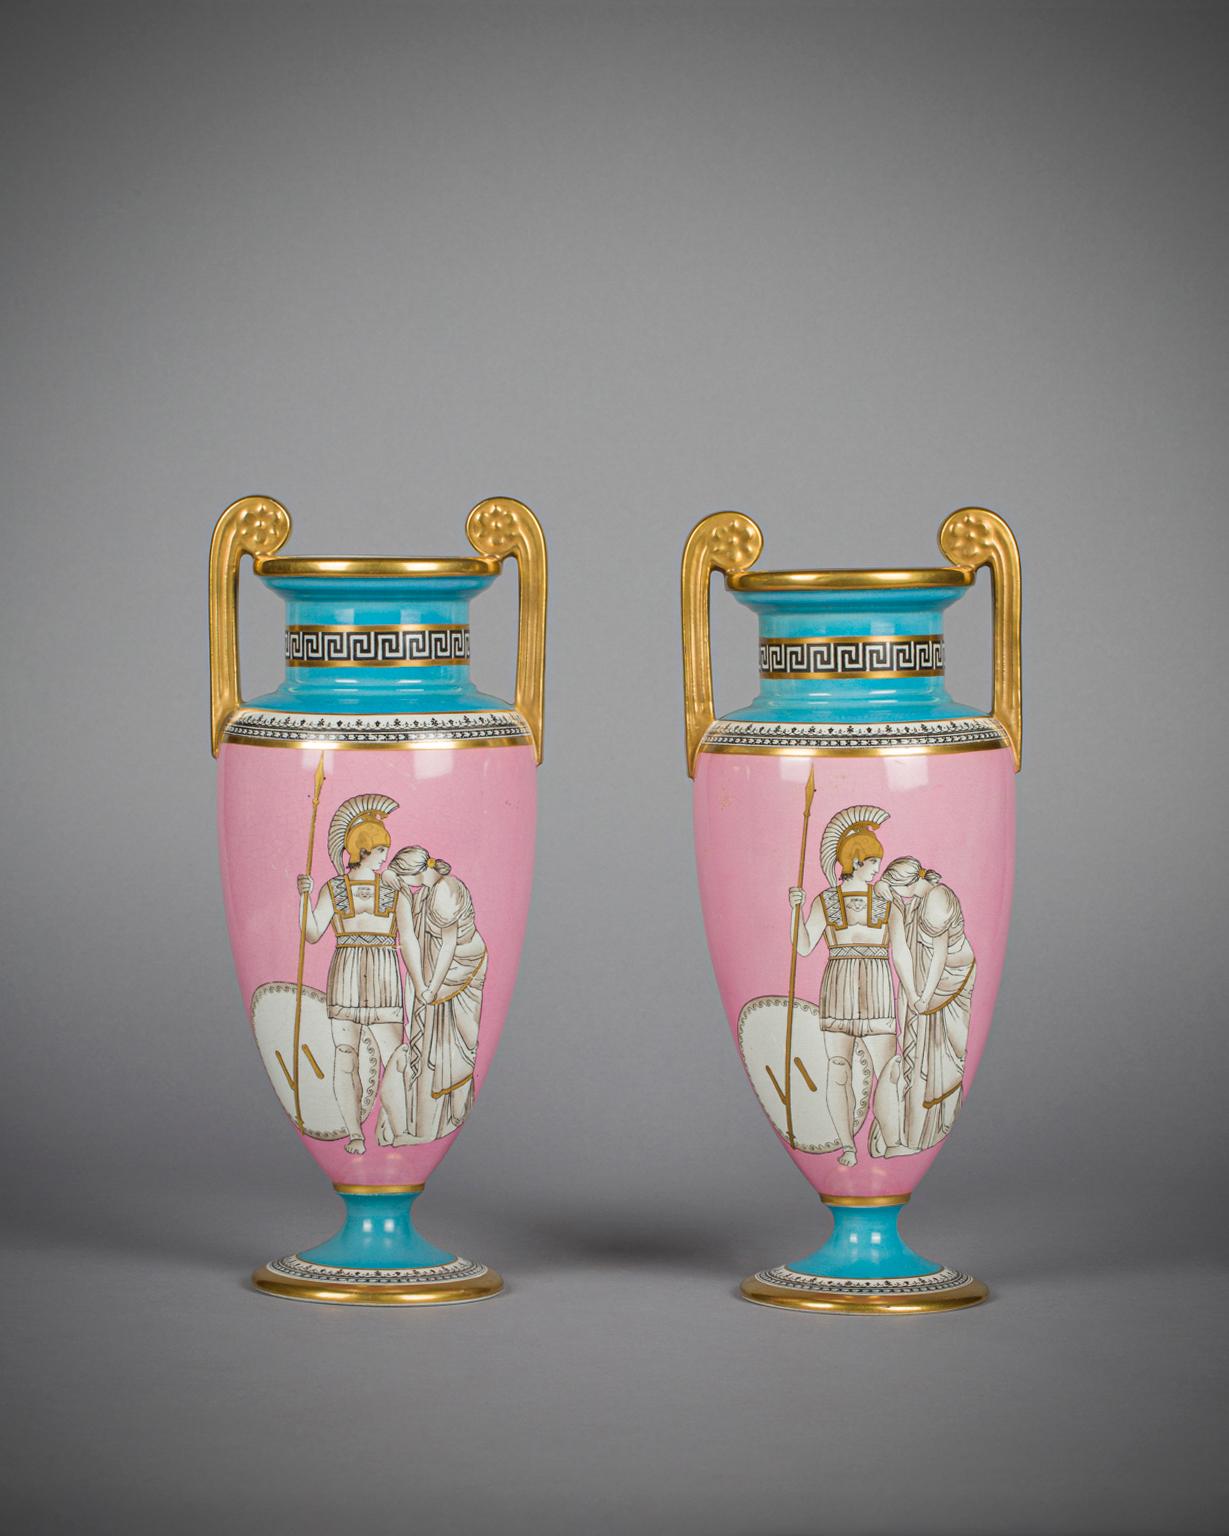 Mit griechisch/römisch-klassischen figürlichen Motiven auf rosafarbenem Grund mit Nackenbordüre, Griffe mit vergoldeten Blütenköpfen.